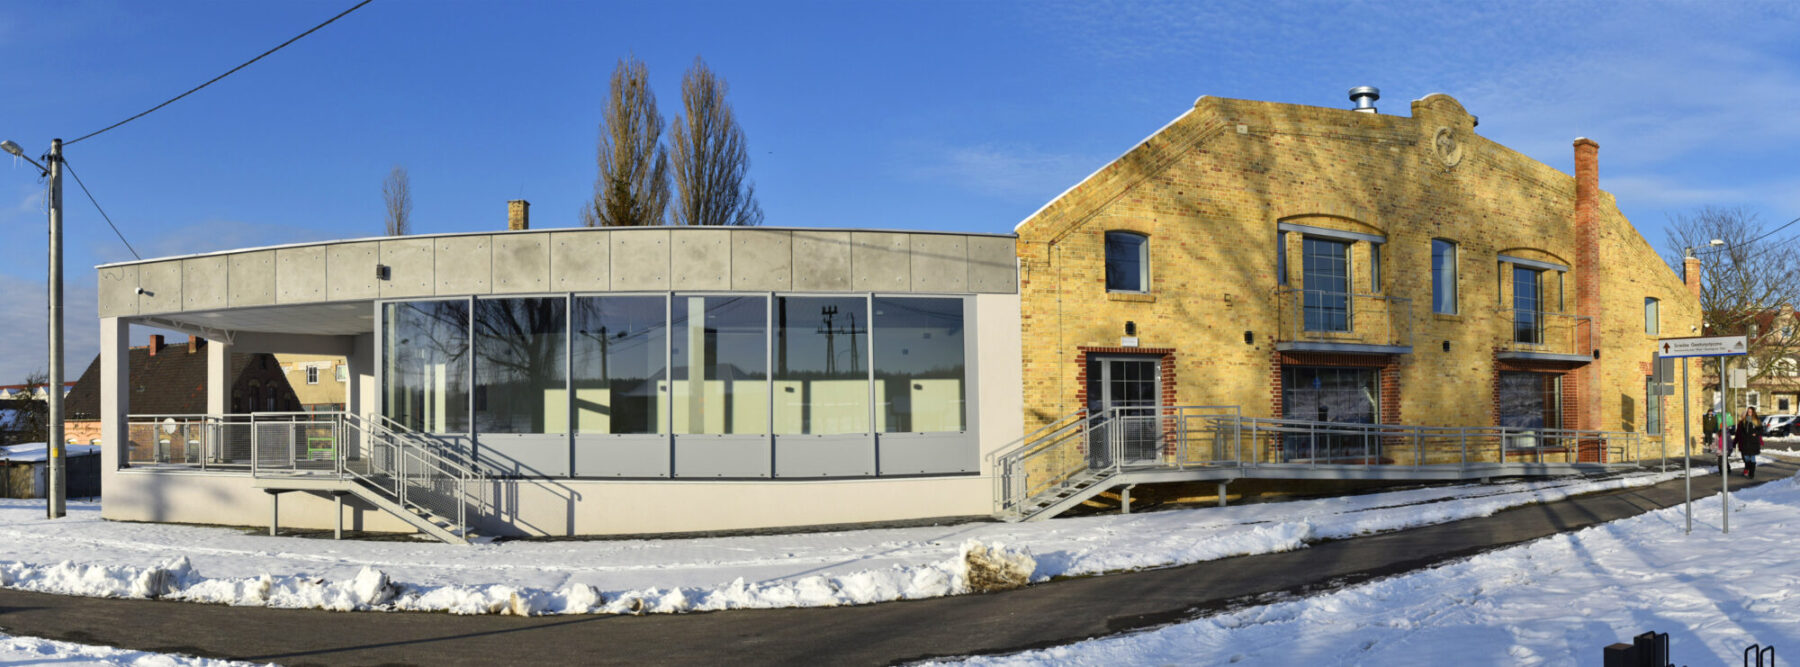 Prace remontowe budynku w Łęknicy